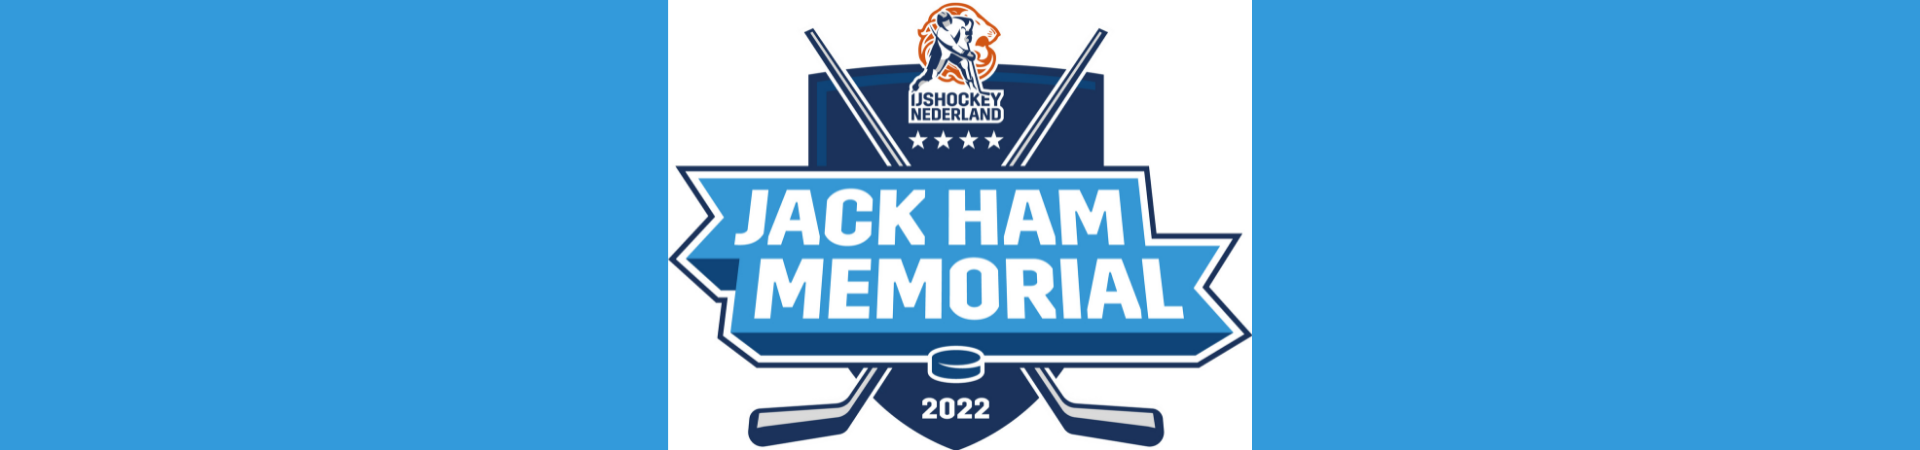 Jack Ham Memorial ticketverkoop